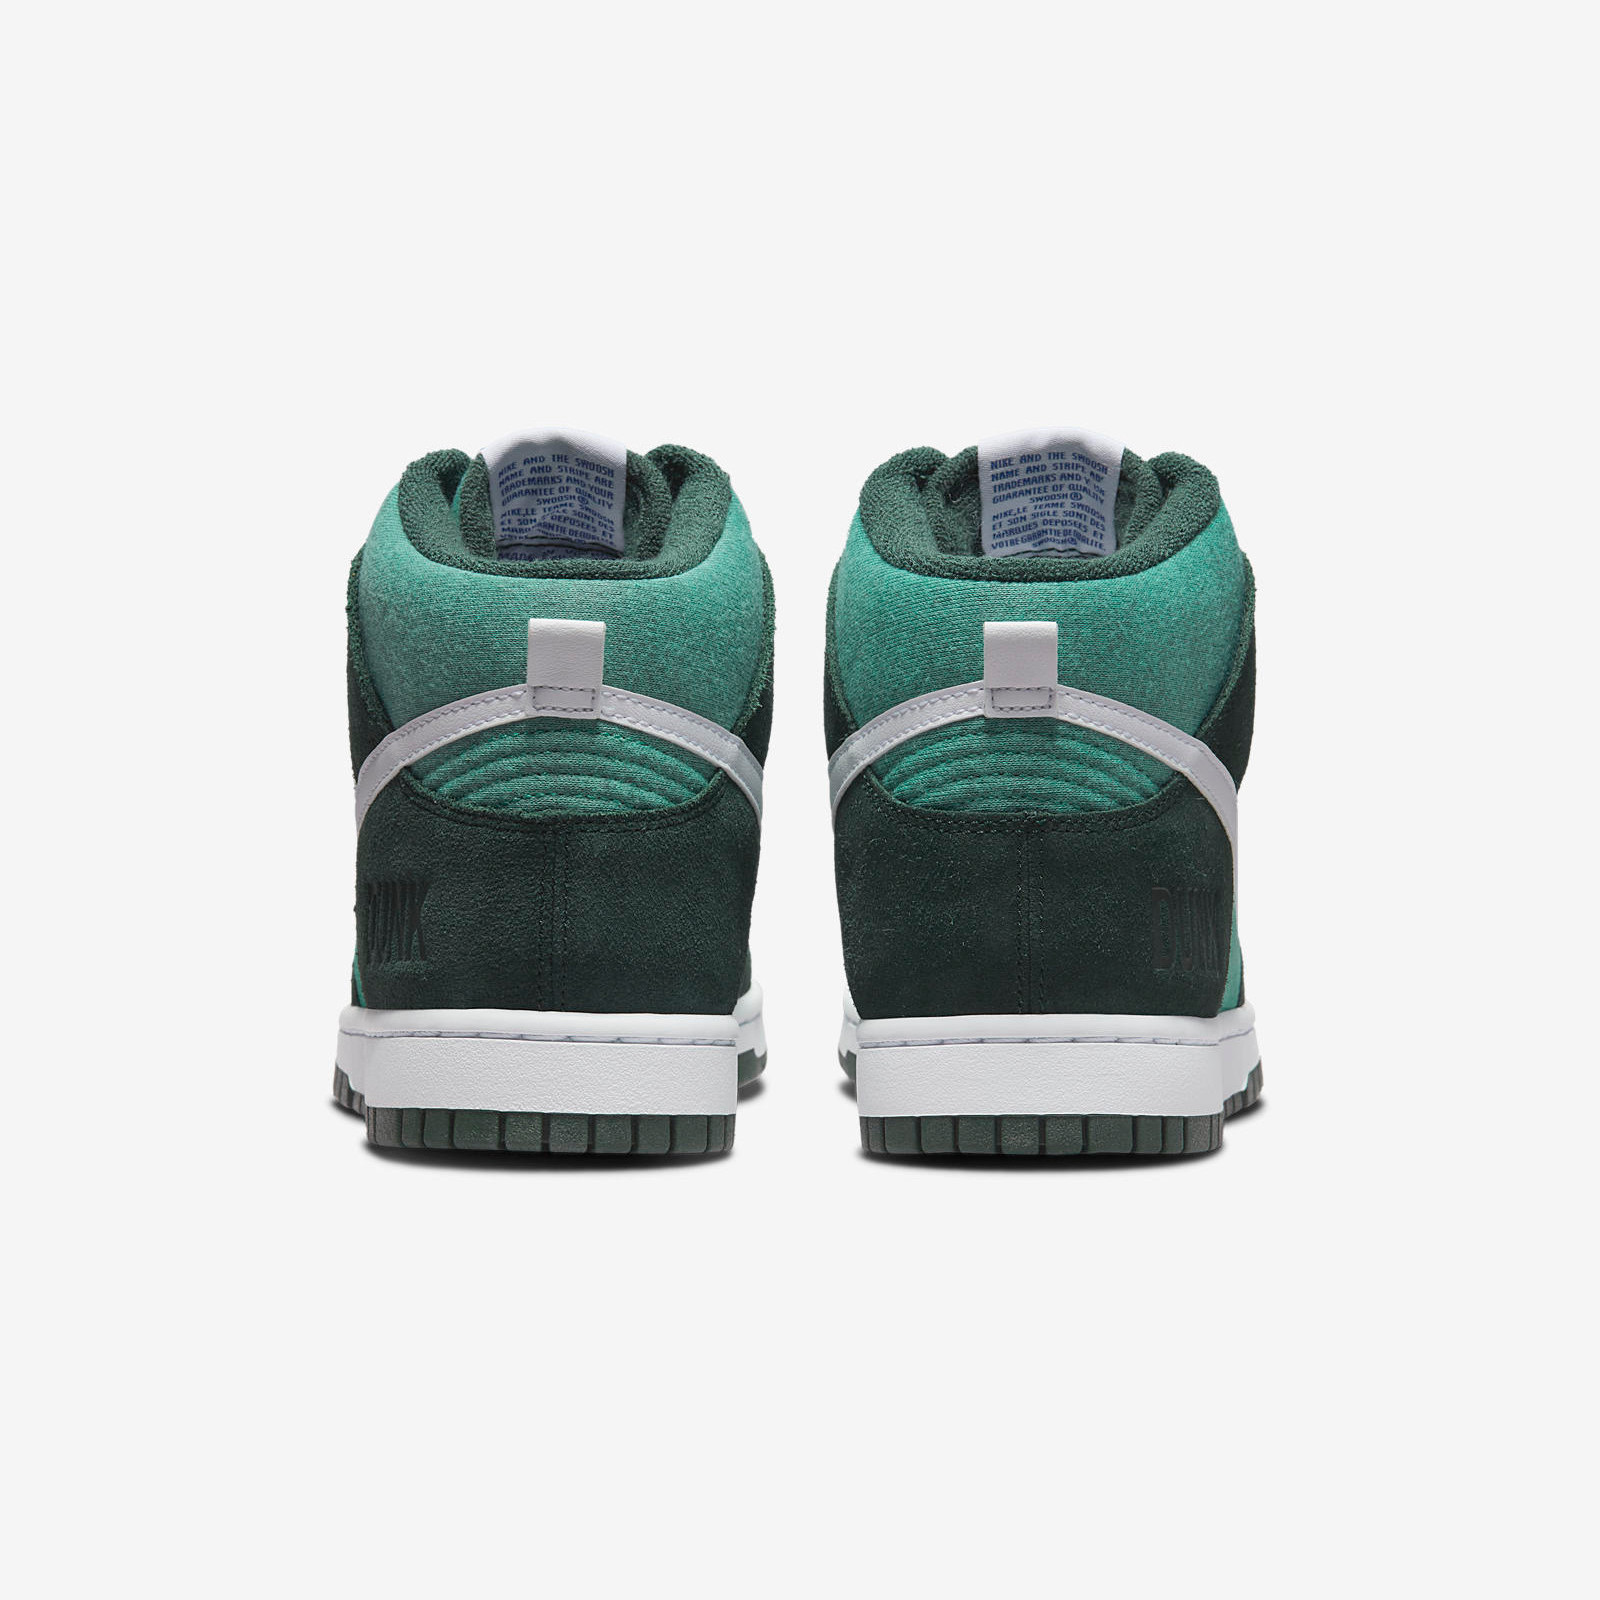 Nike Dunk High
Green / Teal